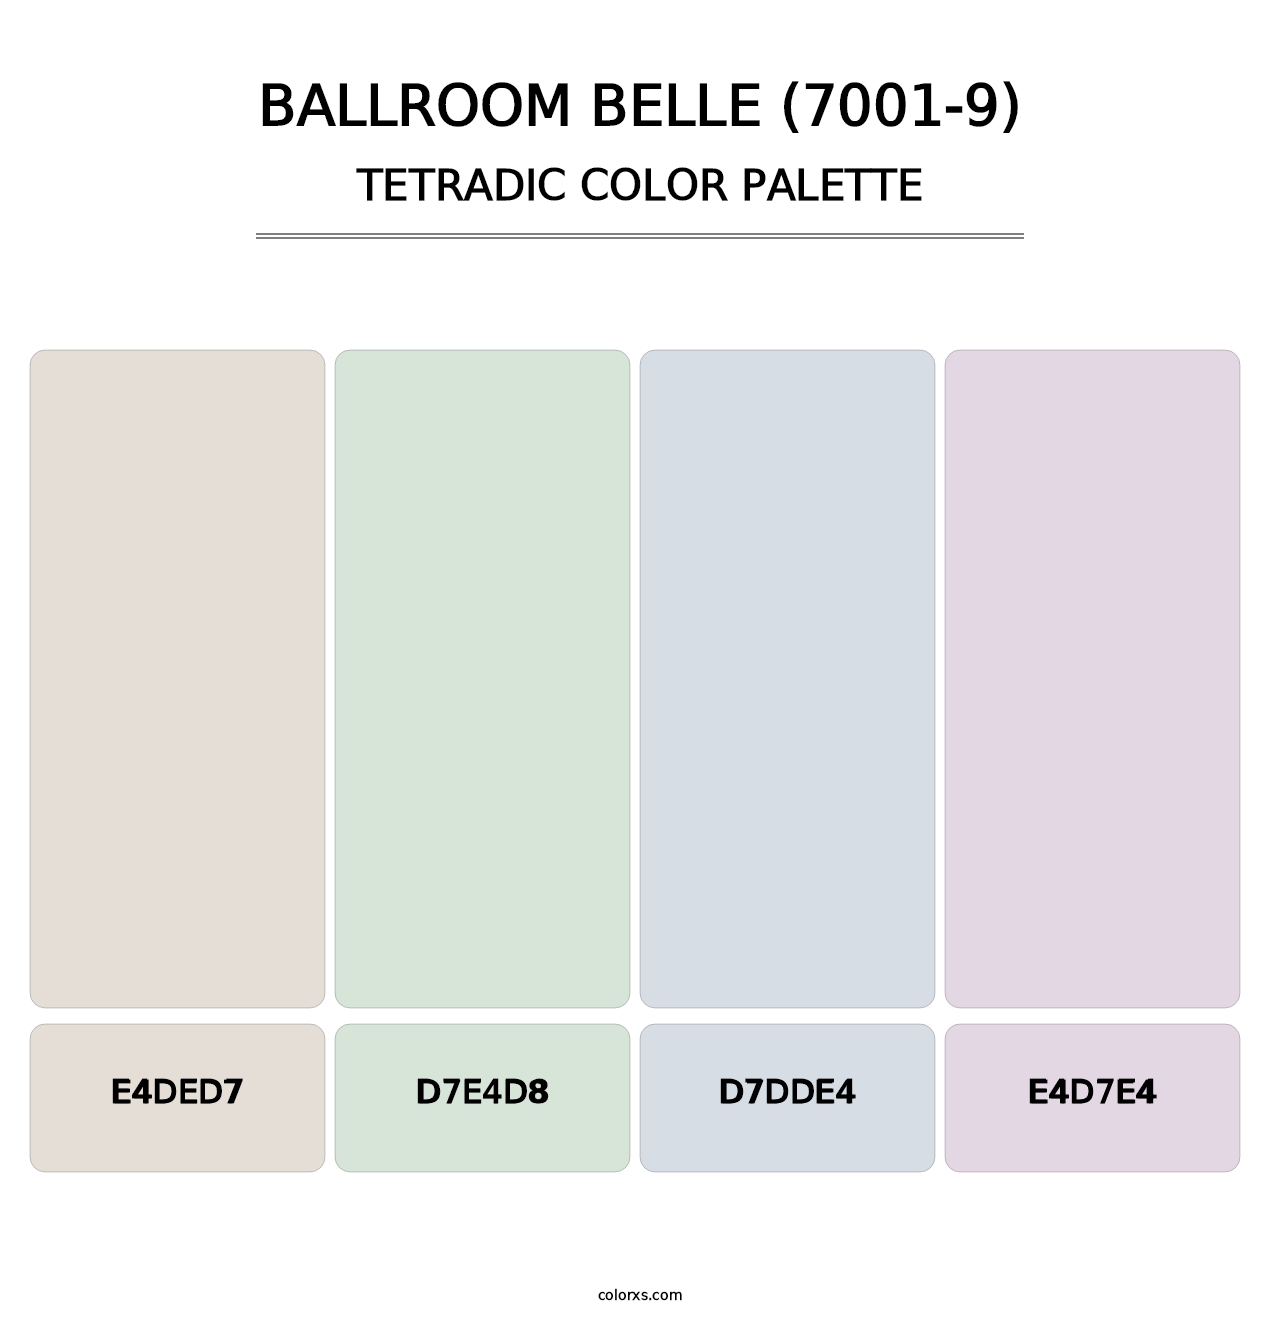 Ballroom Belle (7001-9) - Tetradic Color Palette